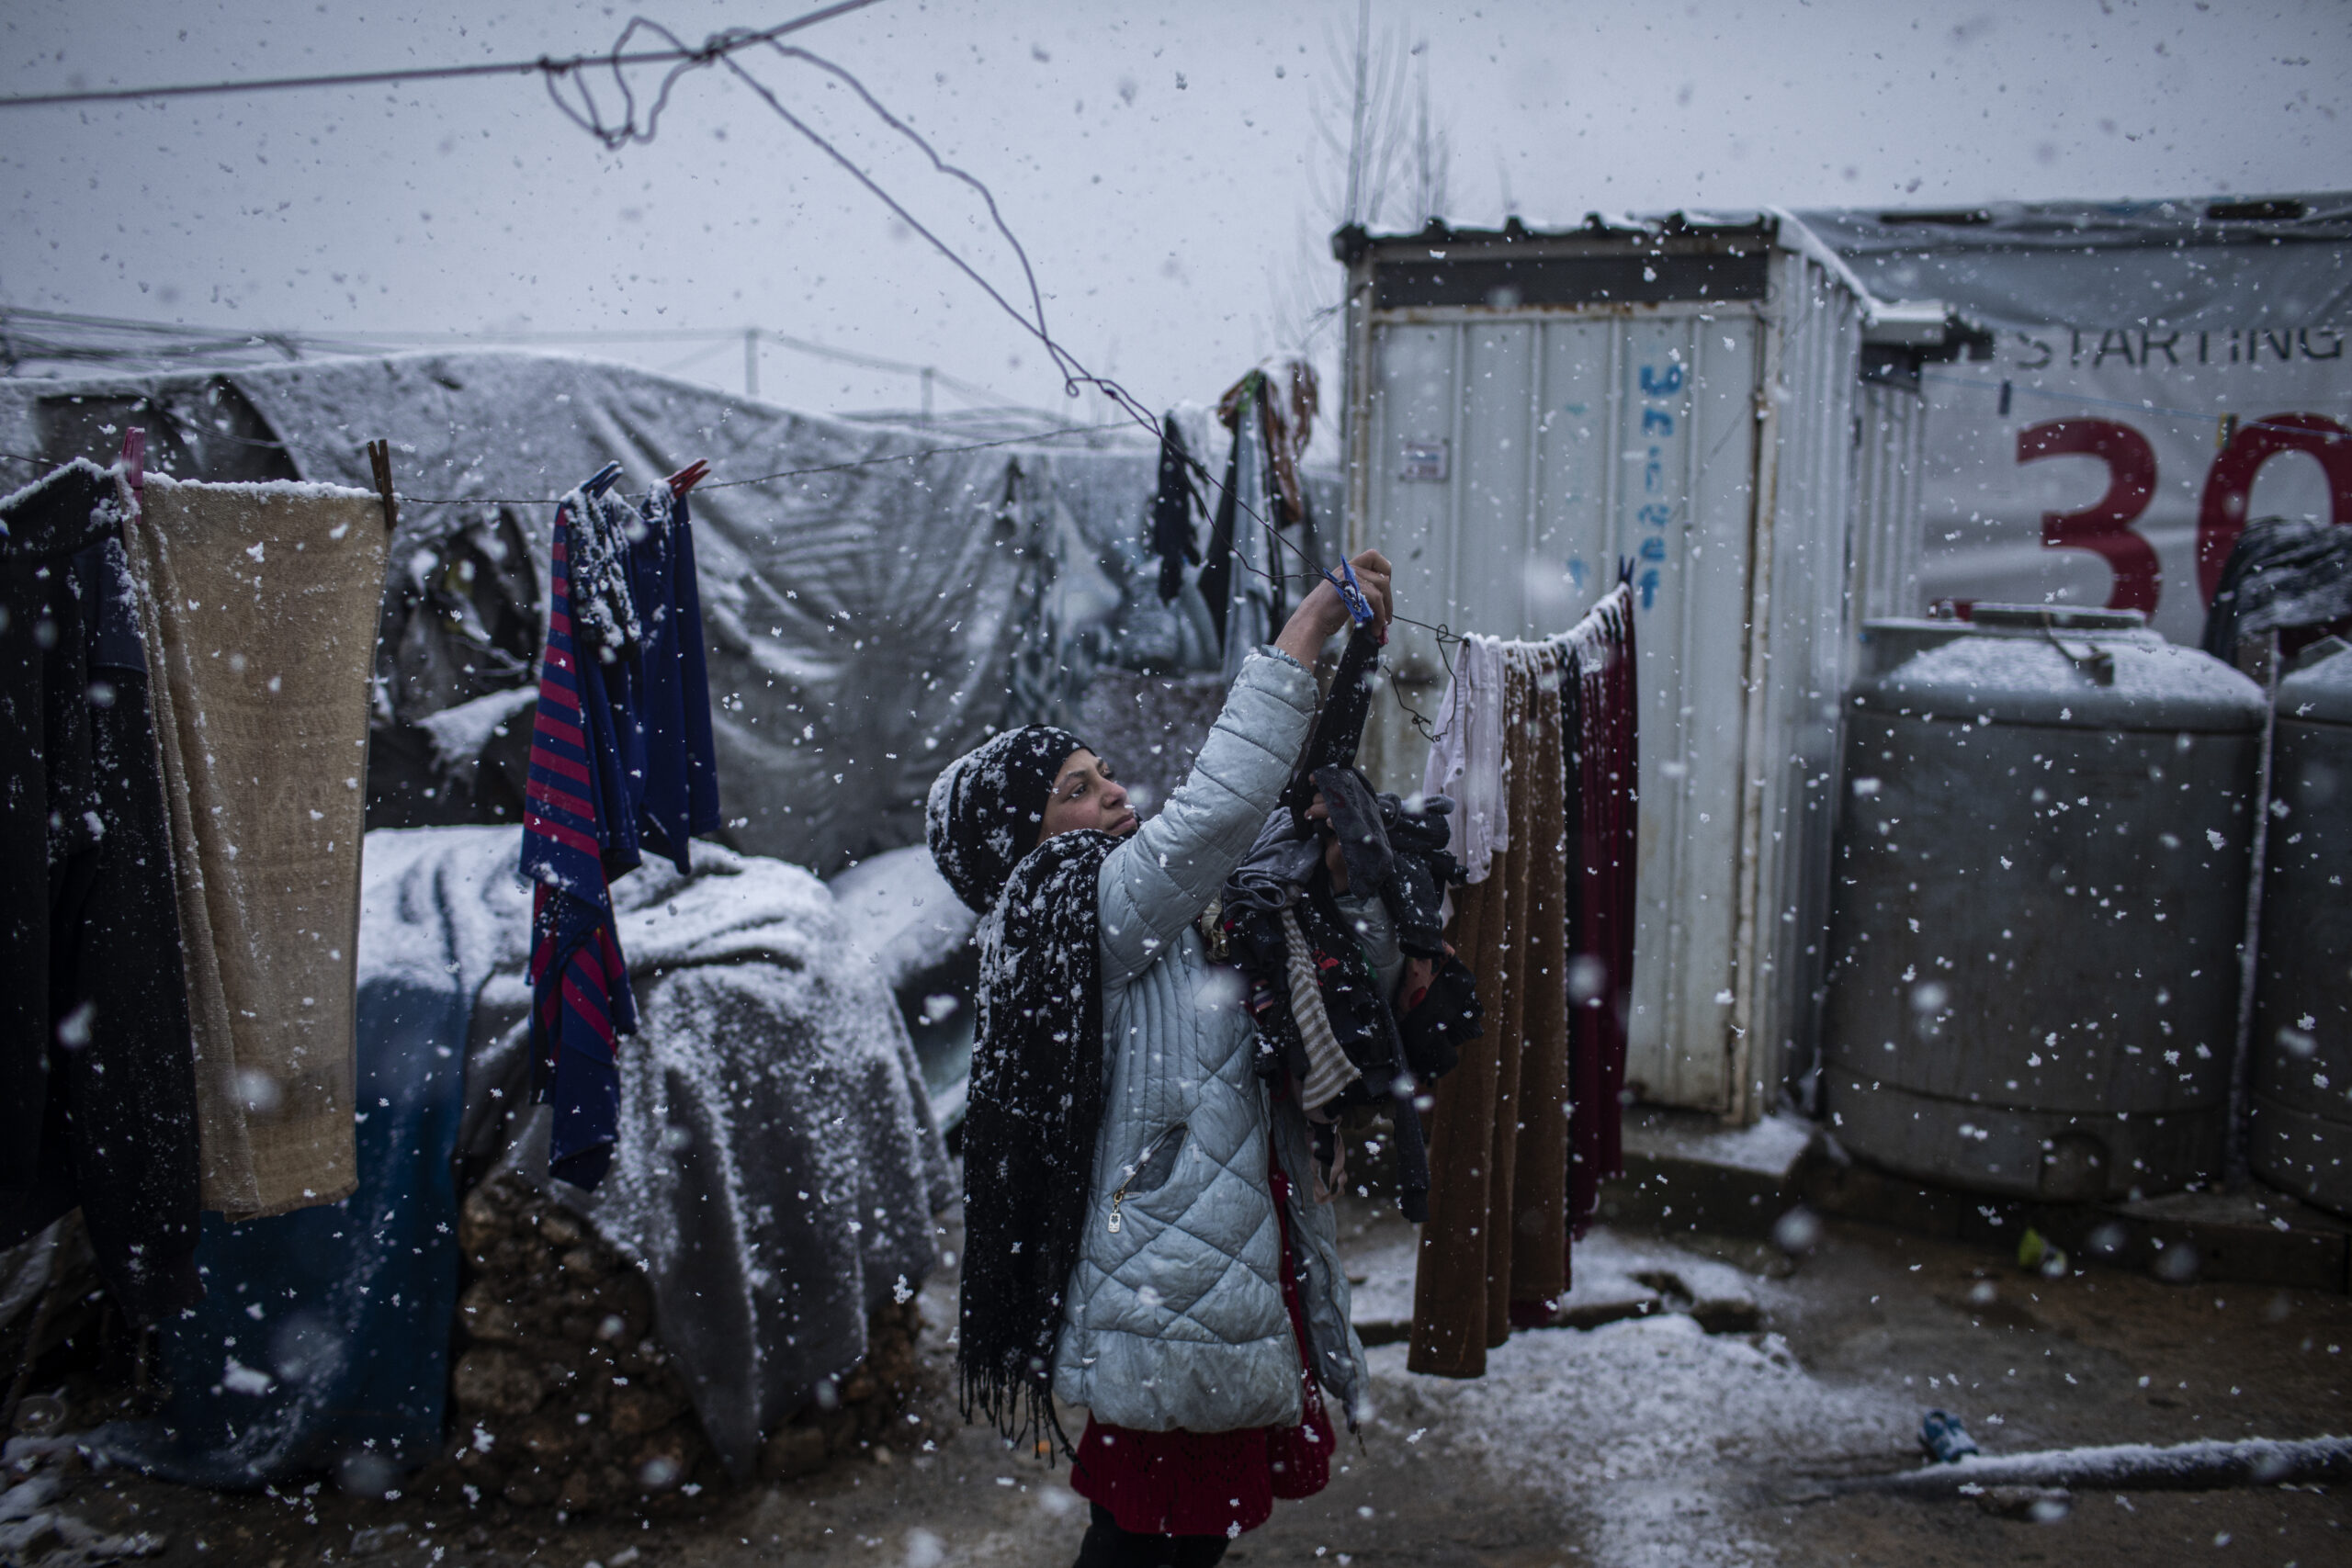 Siba Issa El Ali, een 10 jaar oud Syrisch vluchtelingenmeisje uit Deir ez-Zor, haalt de kleren van de waslijnen tijdens de sneeuwstorm die in een informeel vluchtelingenkamp waar zij verblijft in de Bekavallei woedt. ©UNHCR/Diego Ibarra Sánchez